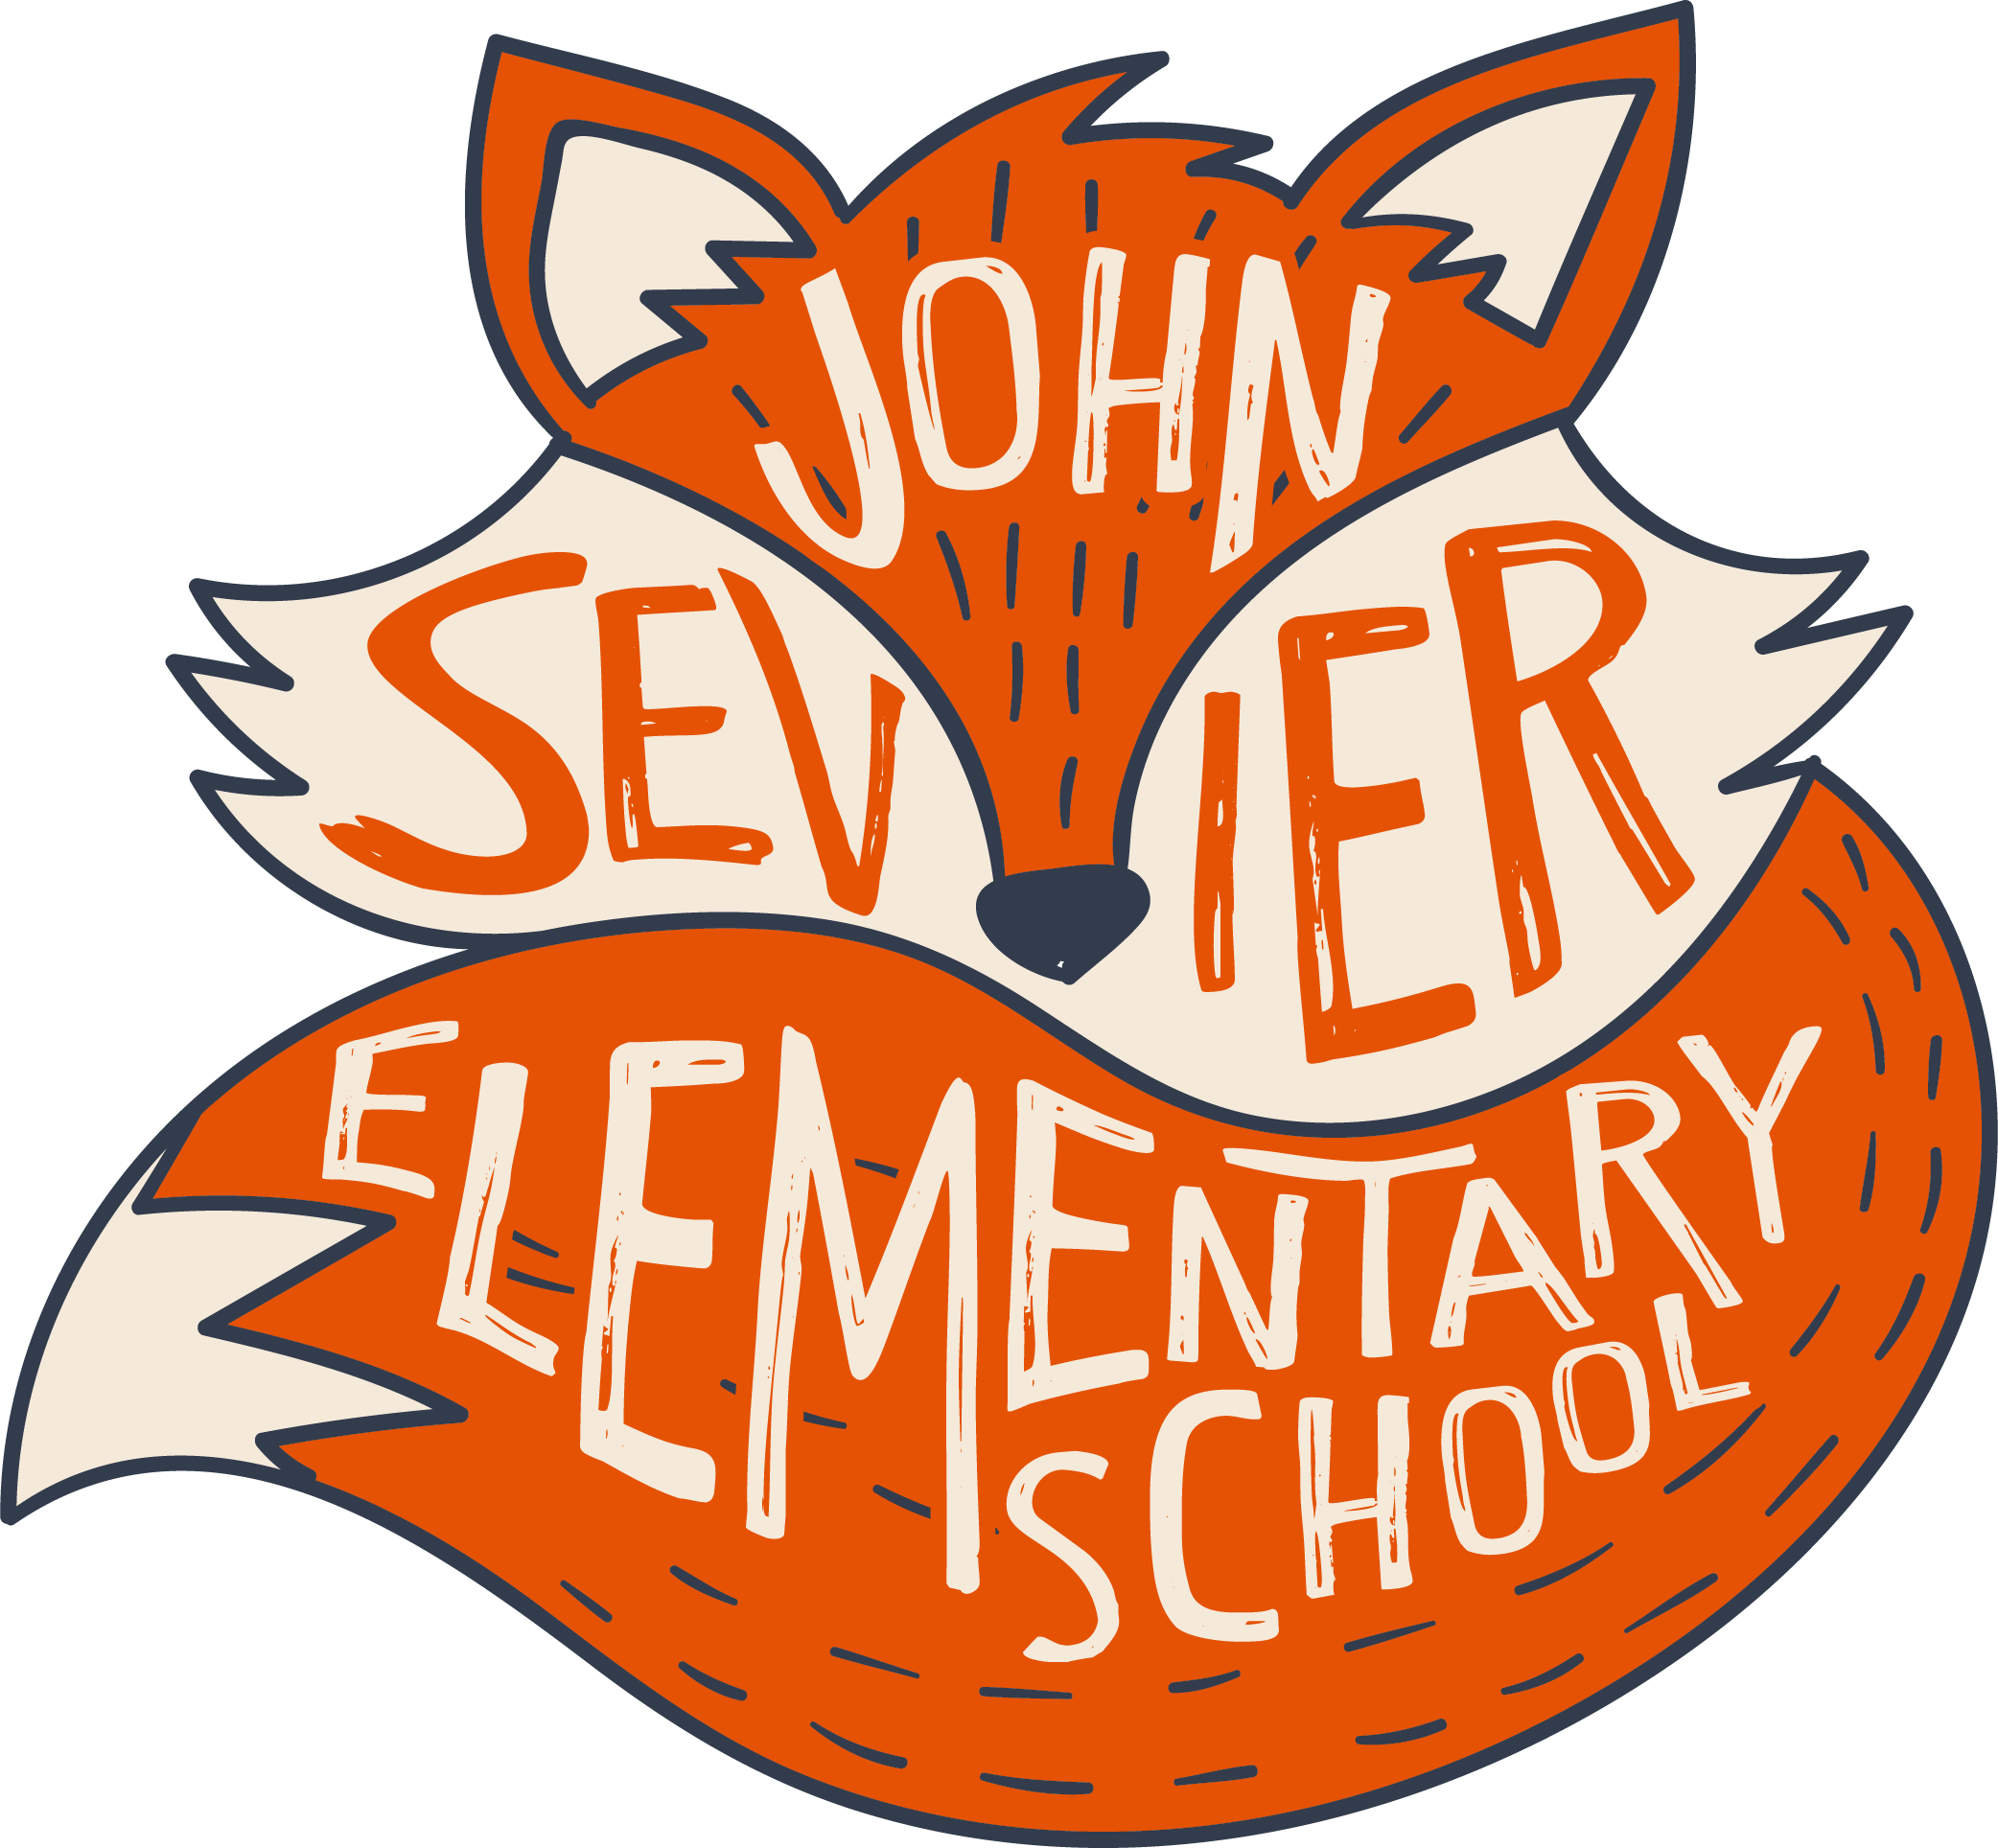 John Sevier Elementary